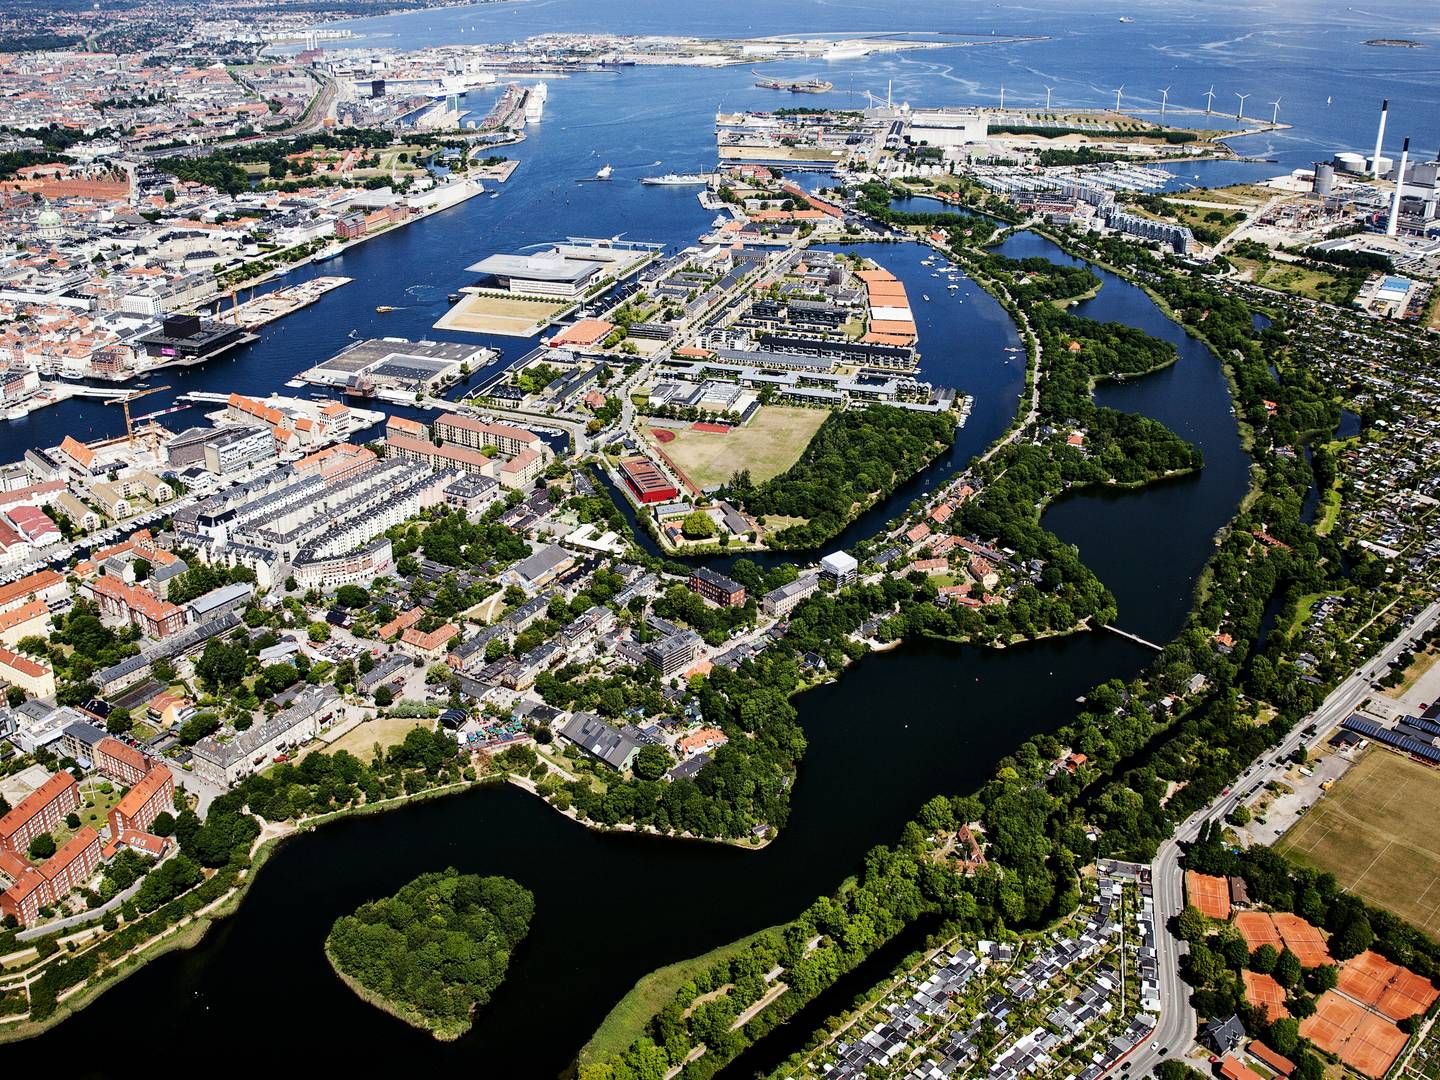 Der mangler en plan for energieffektivitet i de danske byer, siger flere organisationer. | Foto: Janus Engel